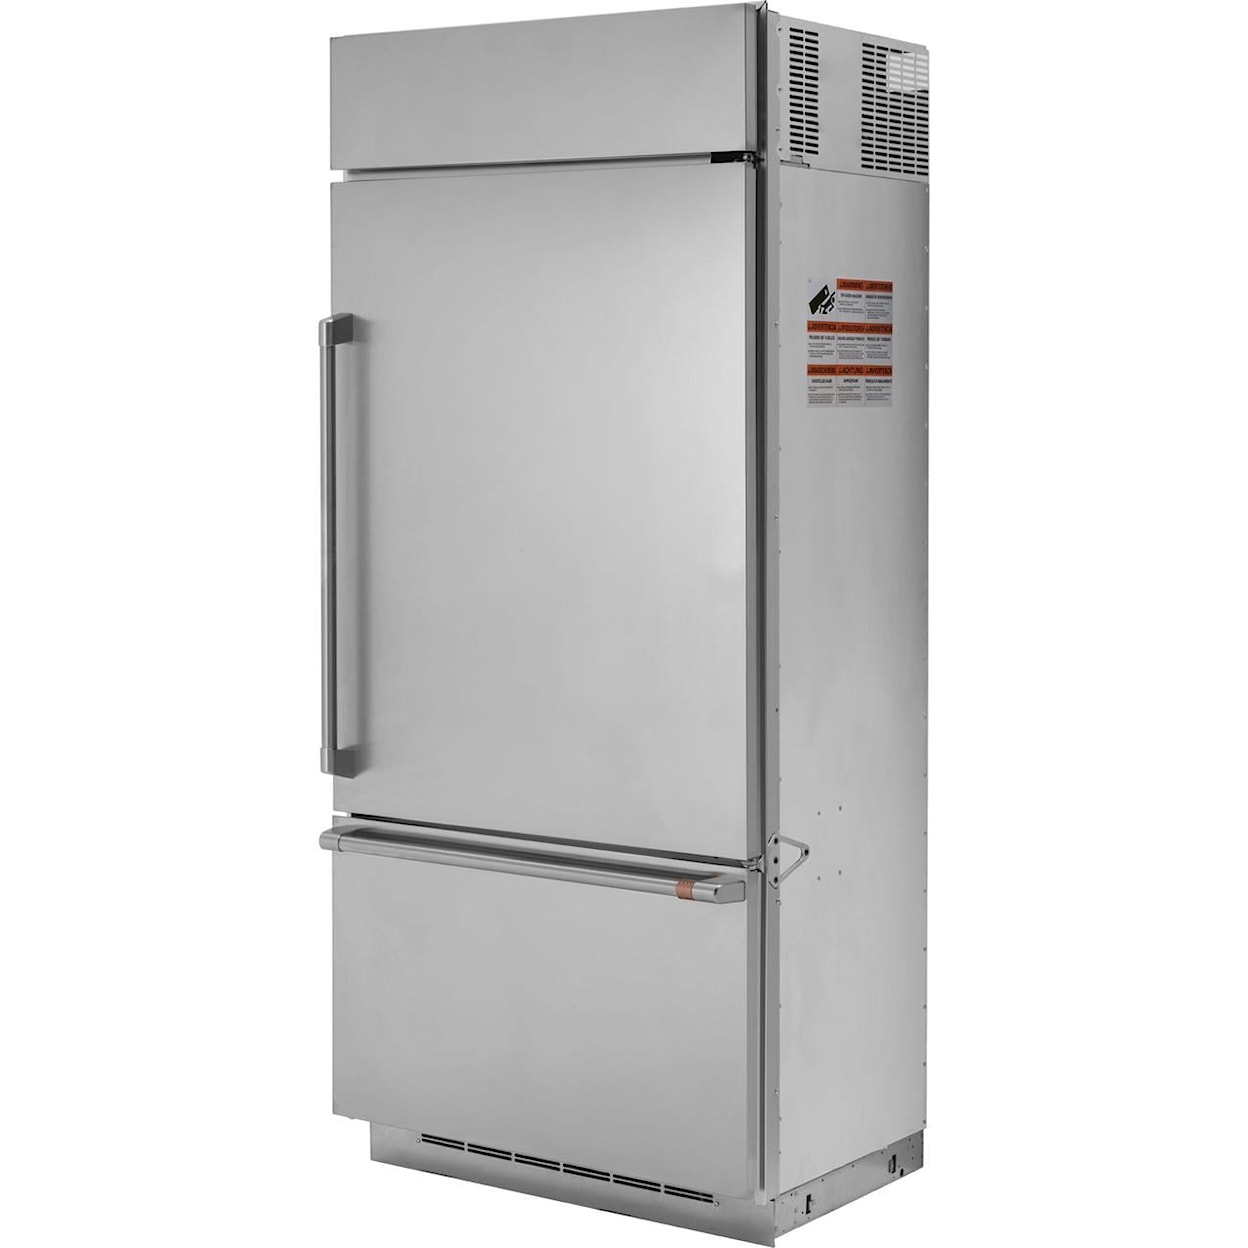 Café Refrigerators Bottom Freezer Built In Refrigerator